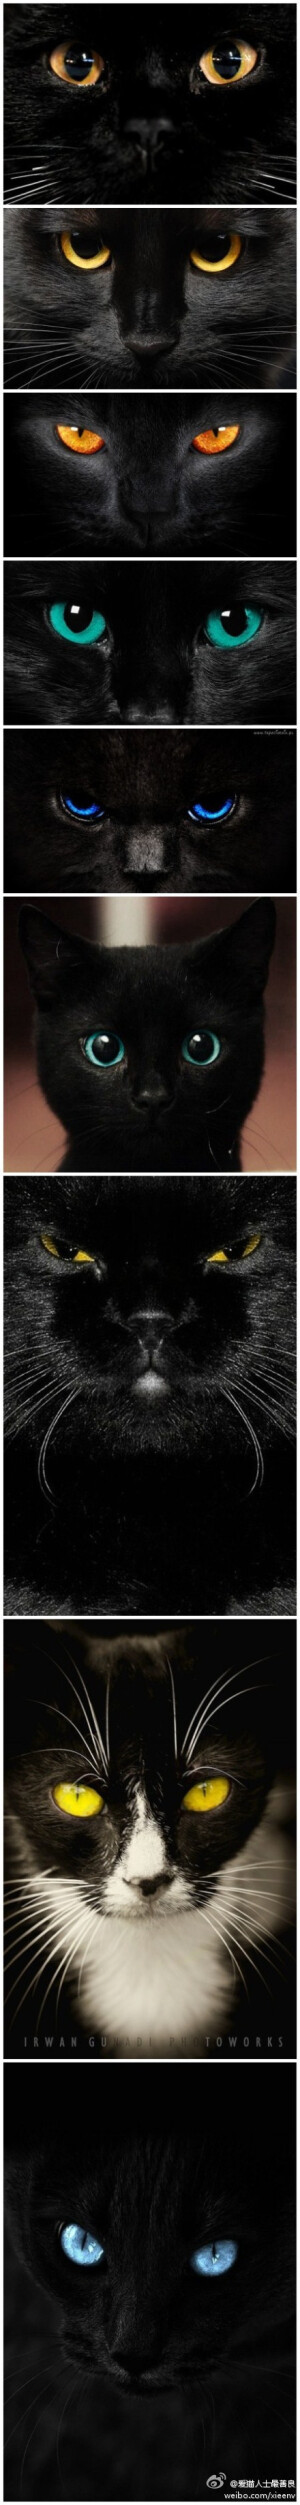 黑猫之眼